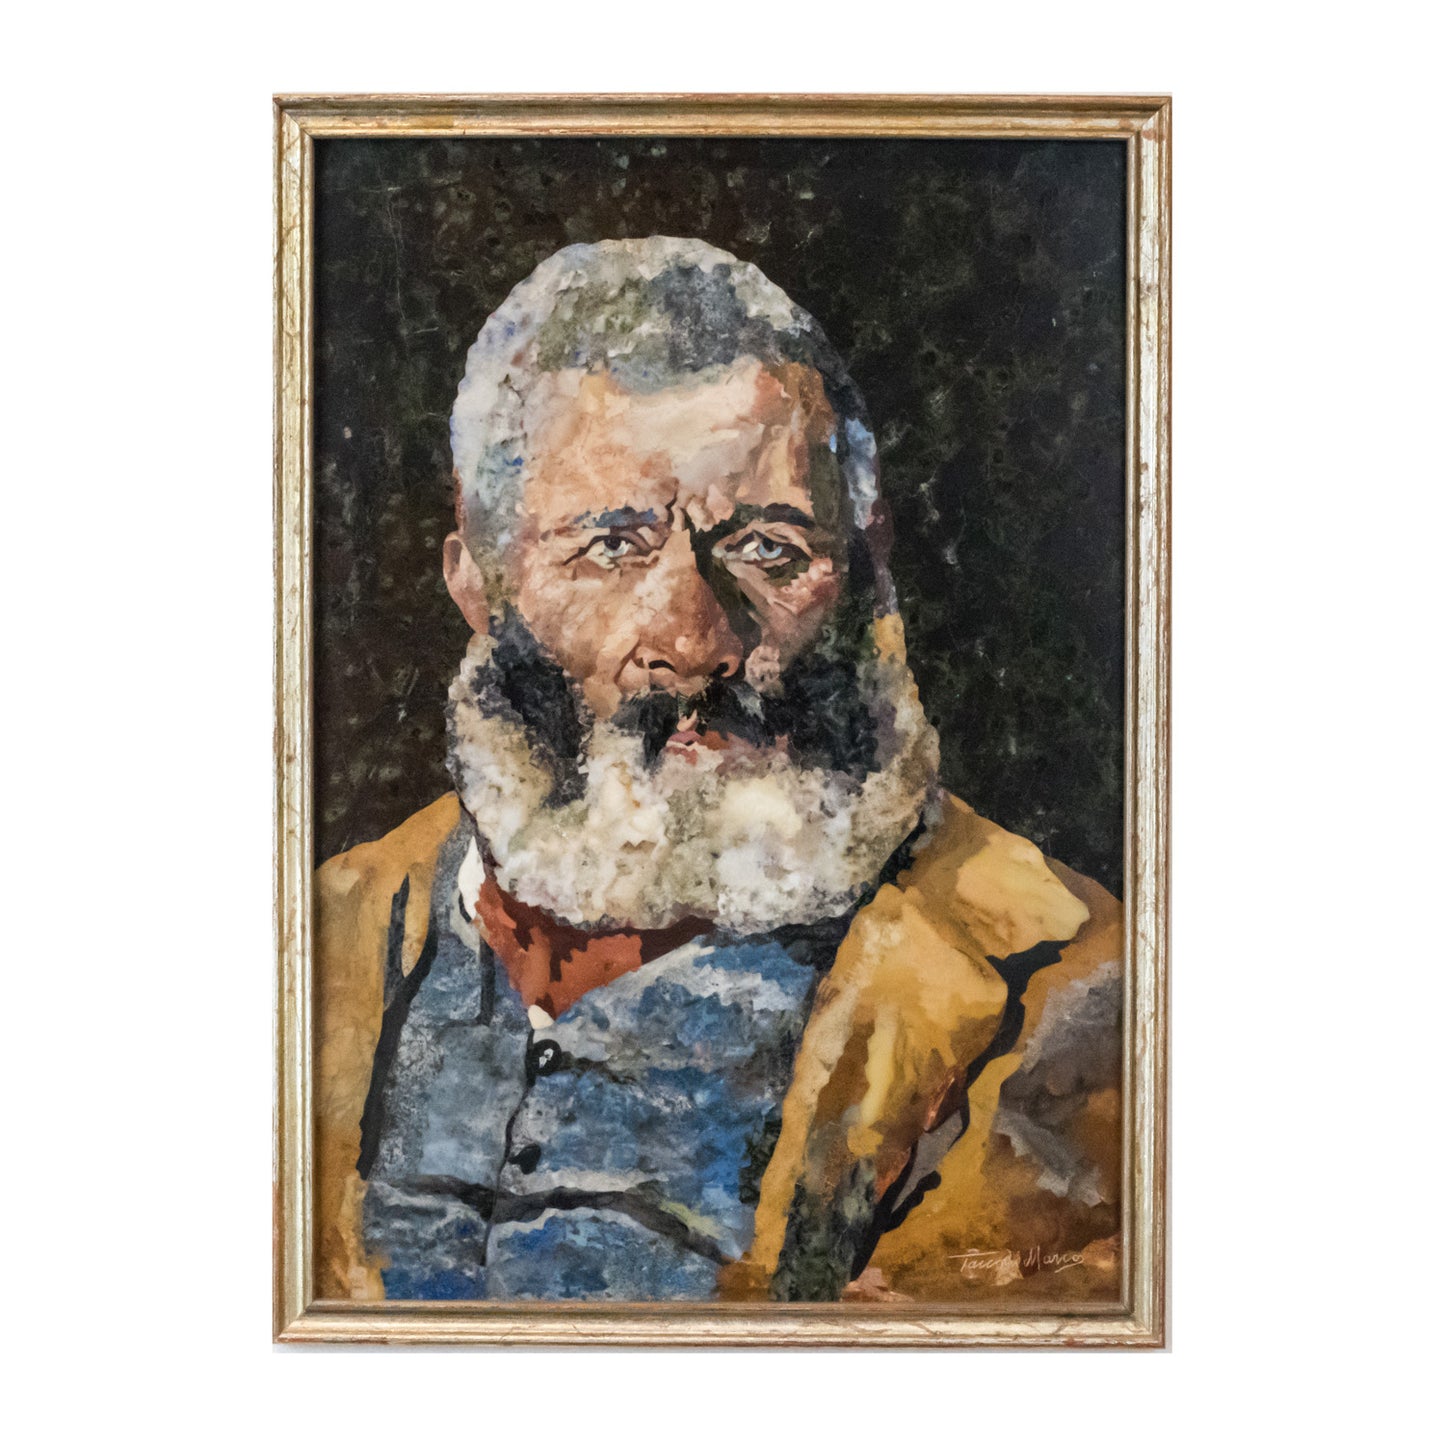 Mosaico Anziano con Barba